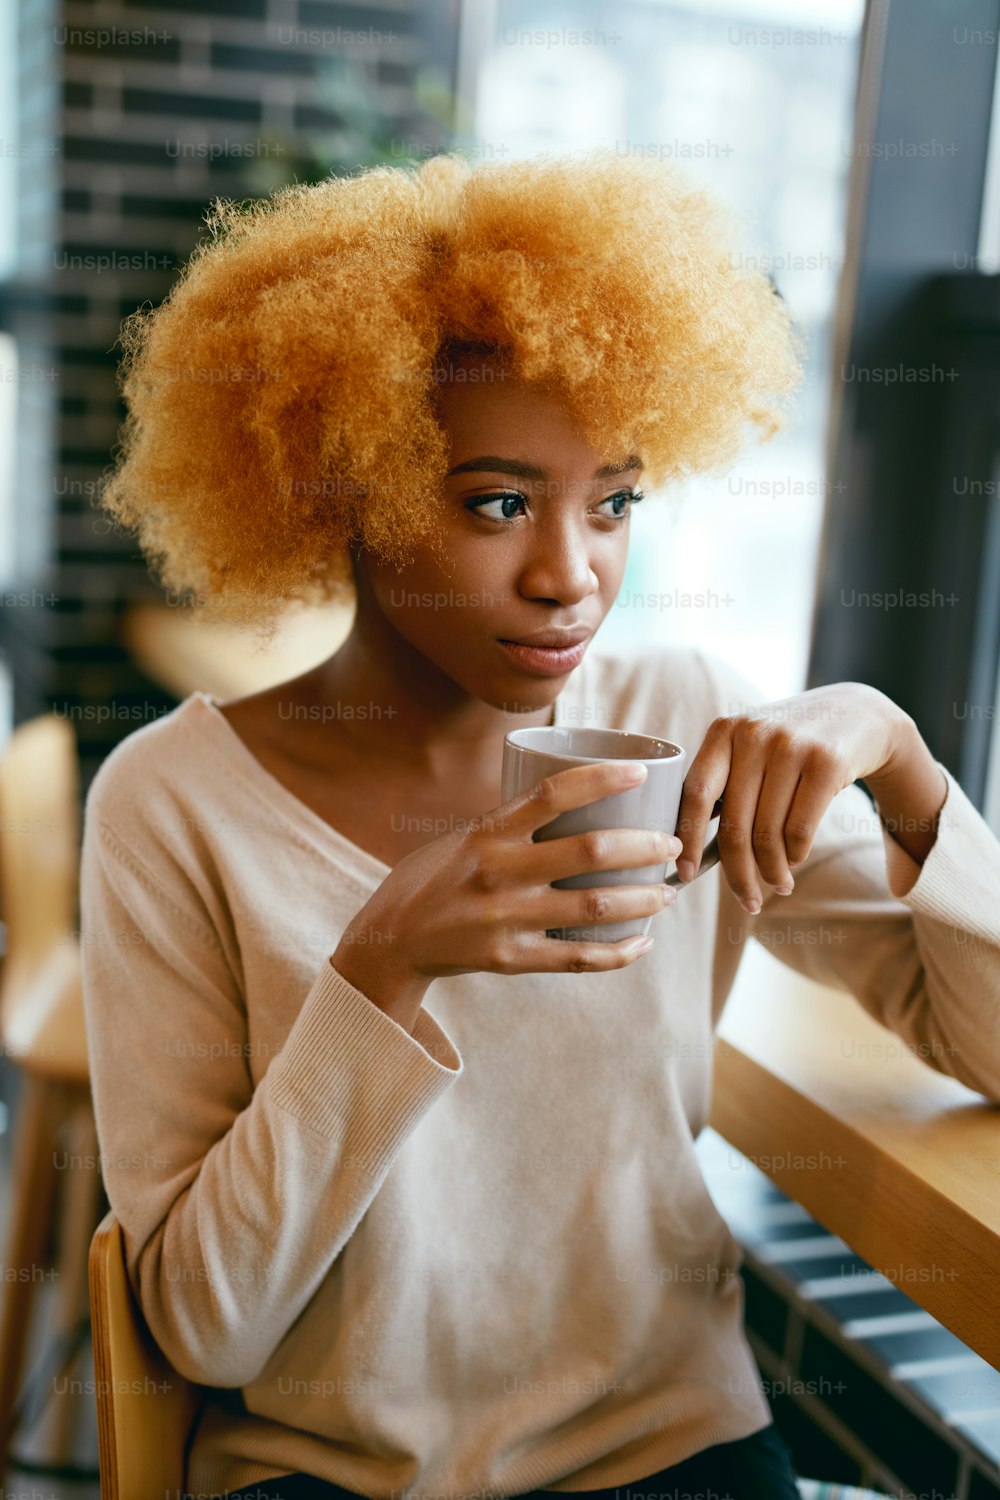 창문 근처 카페에서 커피 음료를 마시는 아름다운 소녀. 카페에서 뜨거운 음료의 cu0p와 함께 캐주얼 옷을 입은 젊은 웃는 아프리카 여성의 초상화. 고해상도